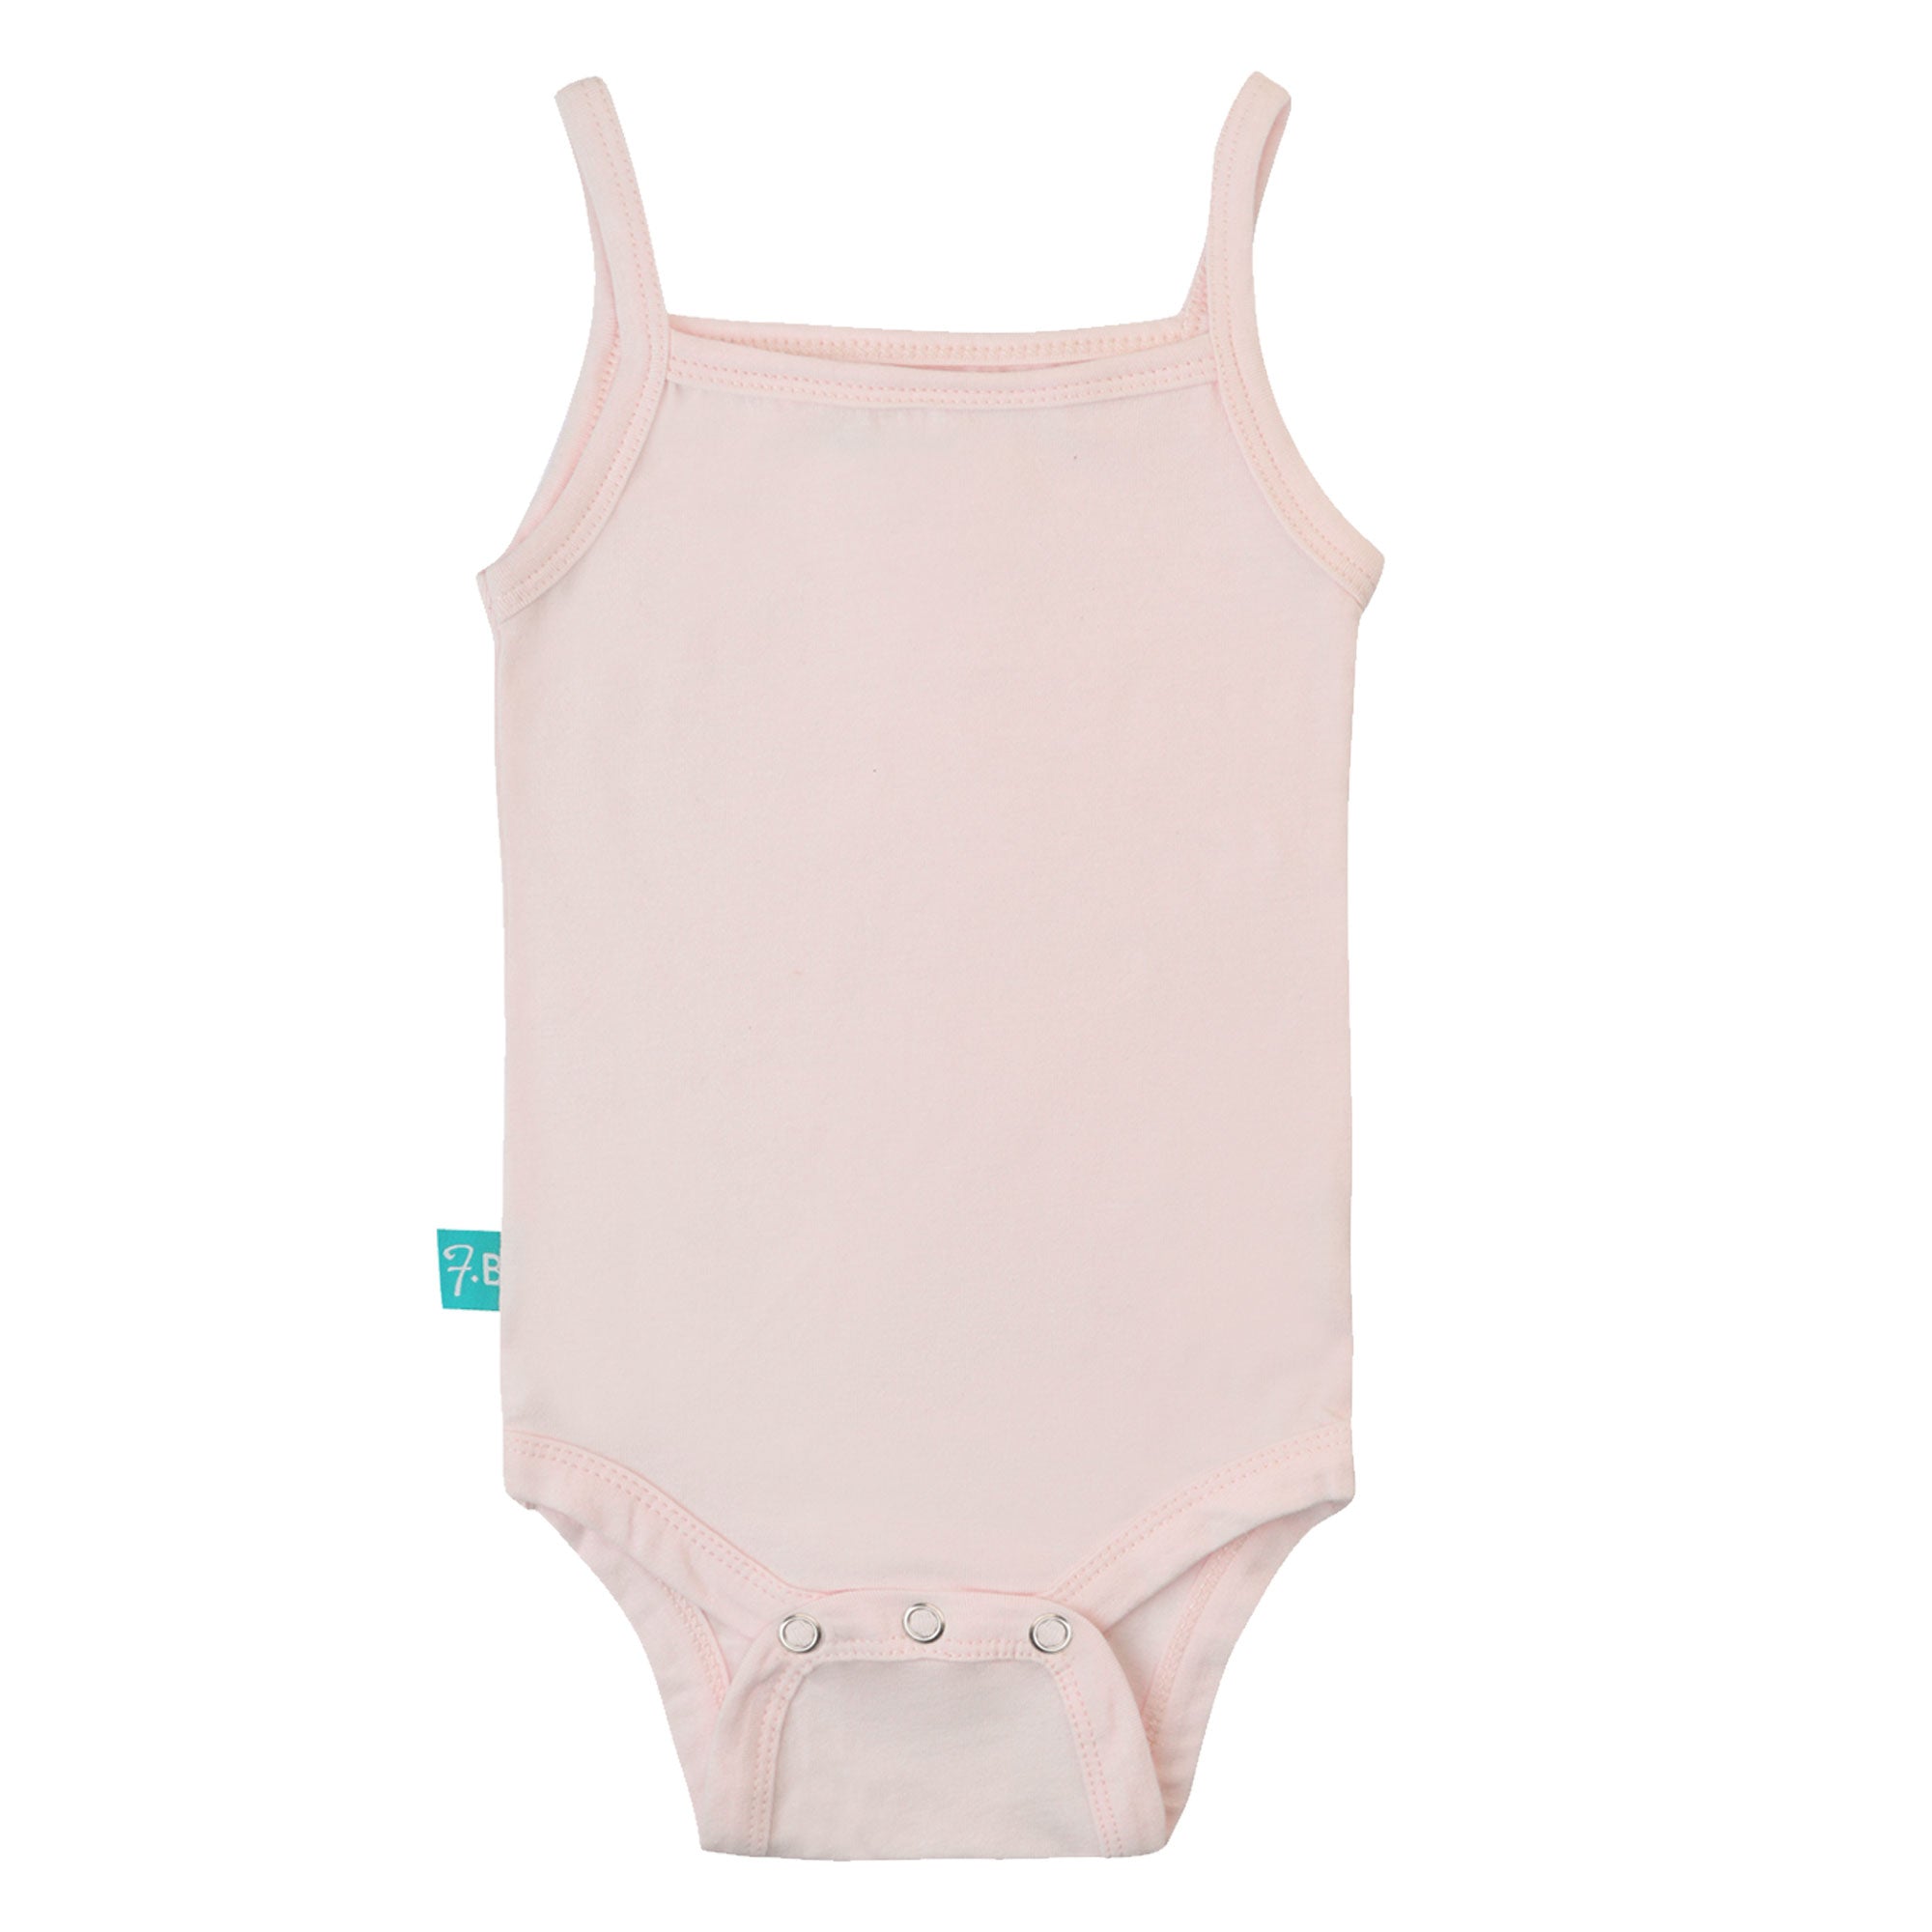 FG-2908 Baby Girl 8-Pack Sleeveless Bodysuits